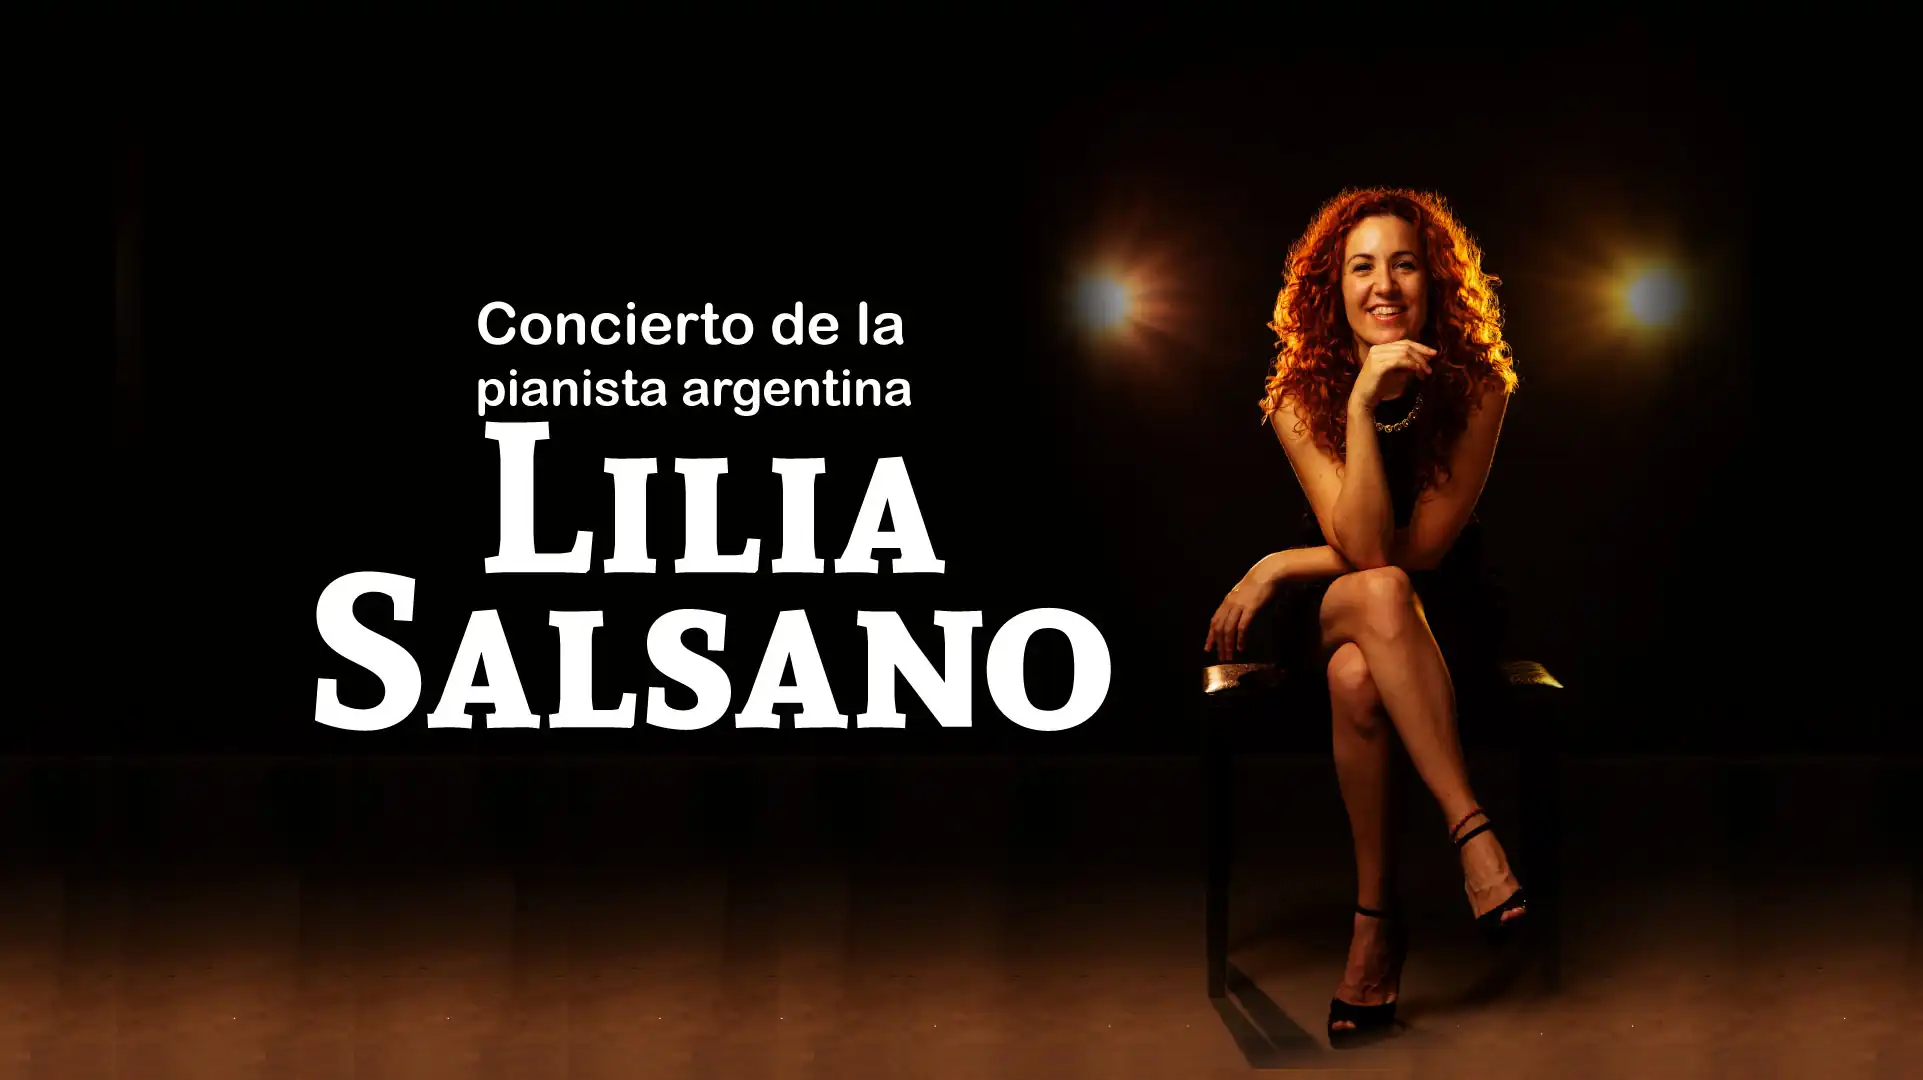 concierto-pianista-argentina-lilia-salsano